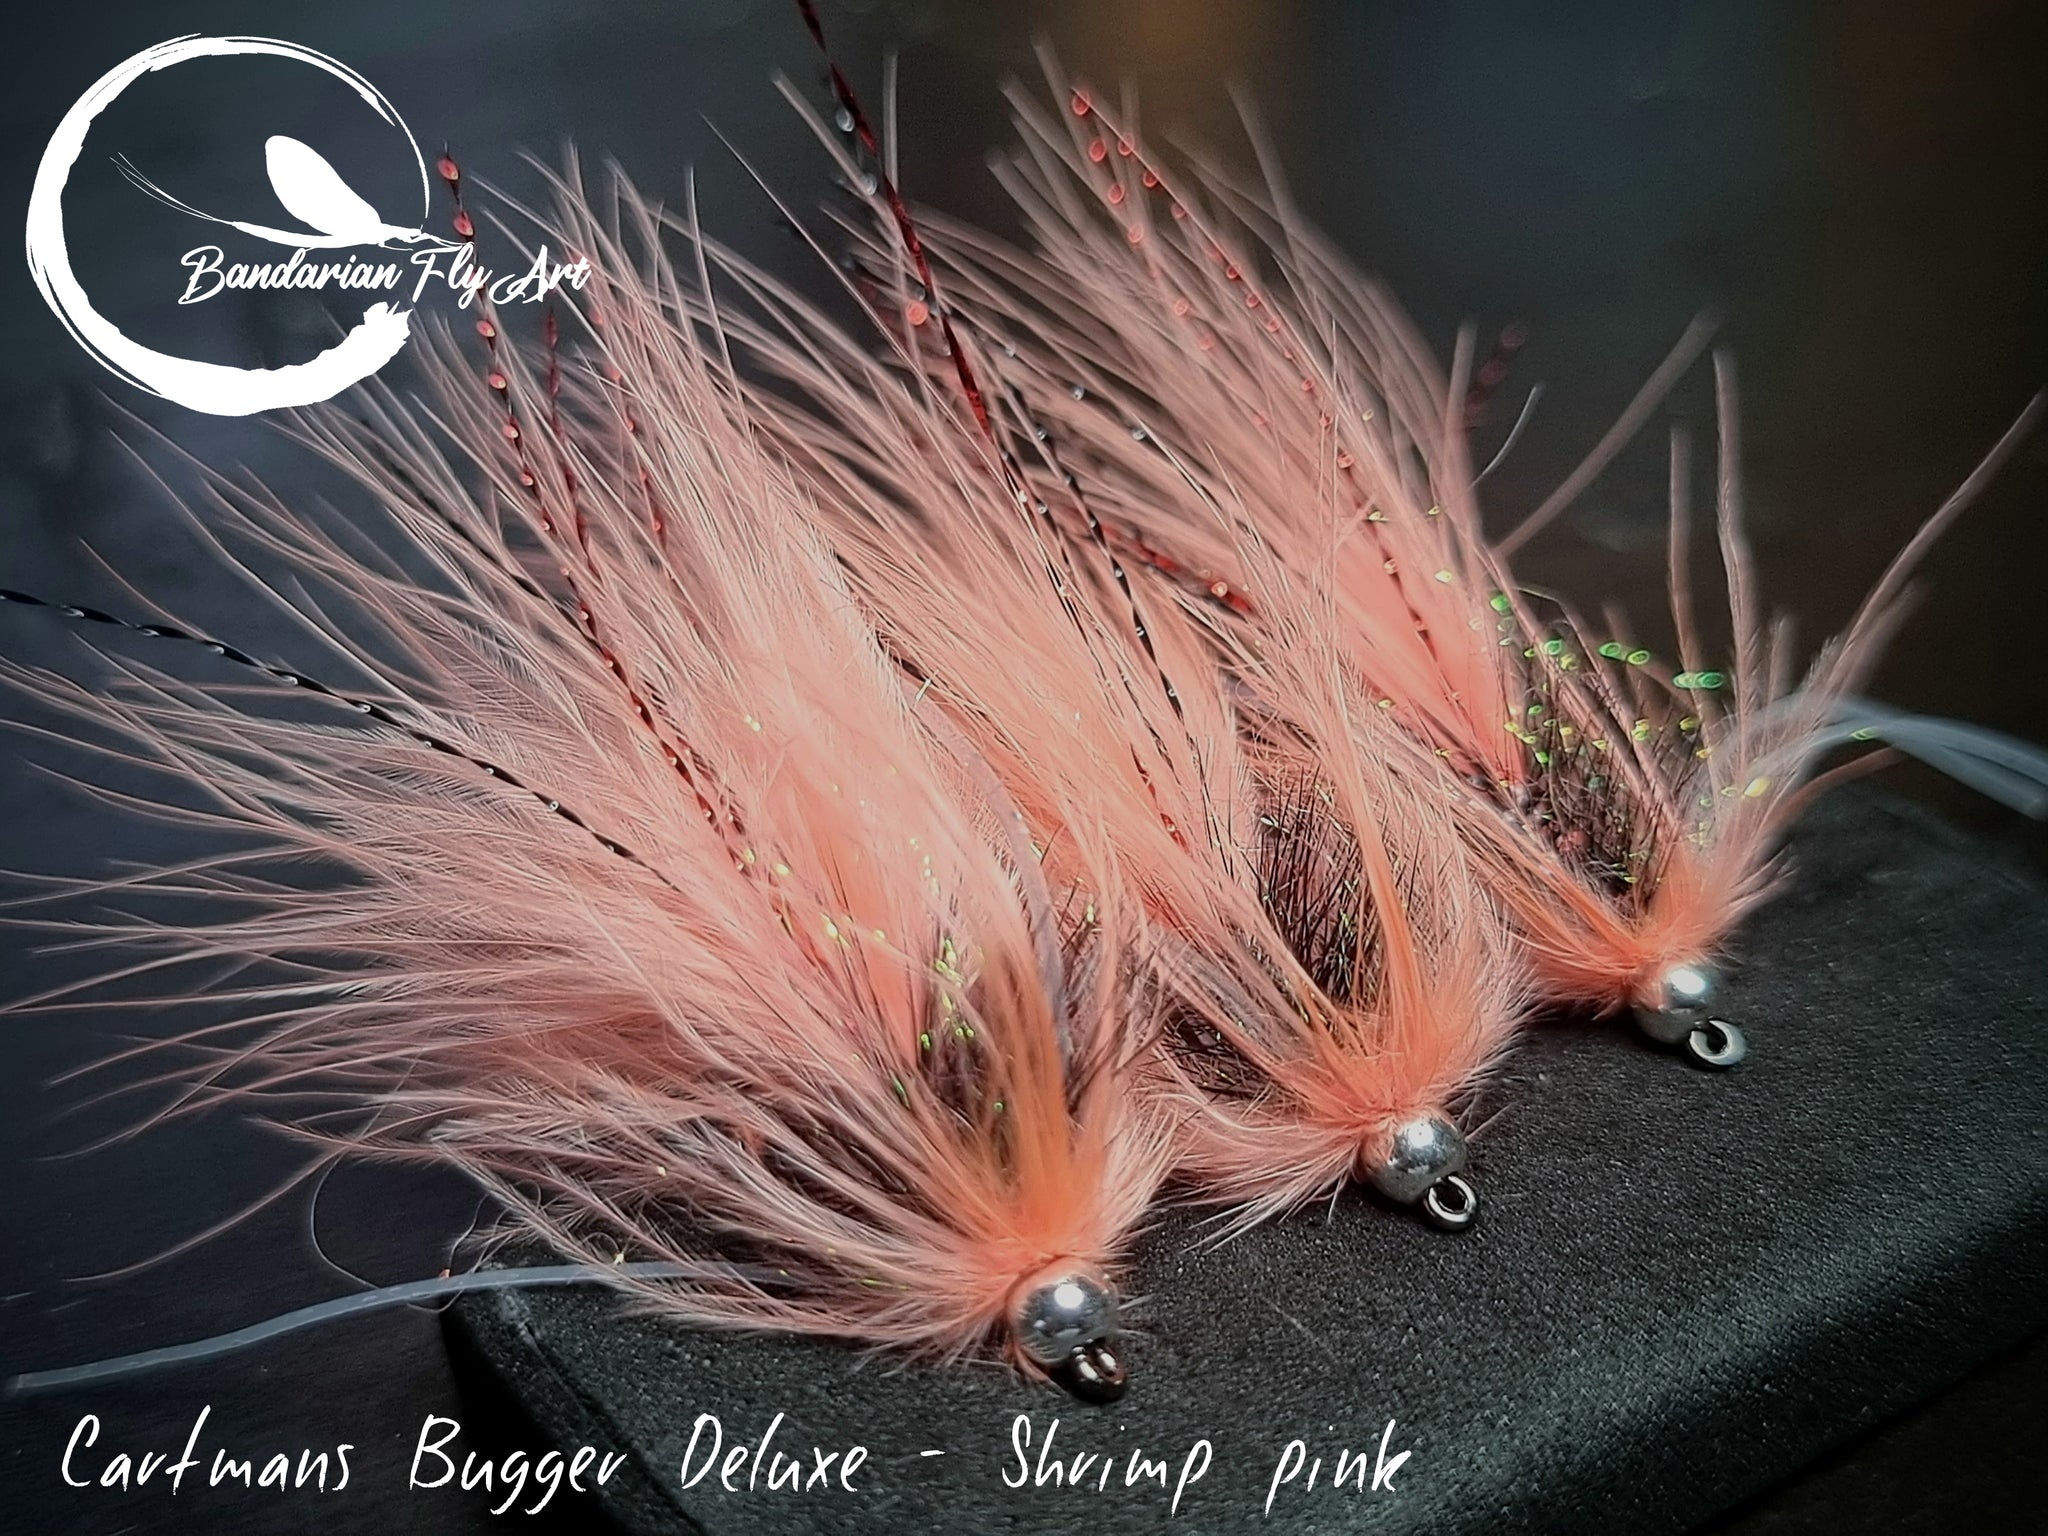 Cartmans Bugger Deluxe - Shrimp pink